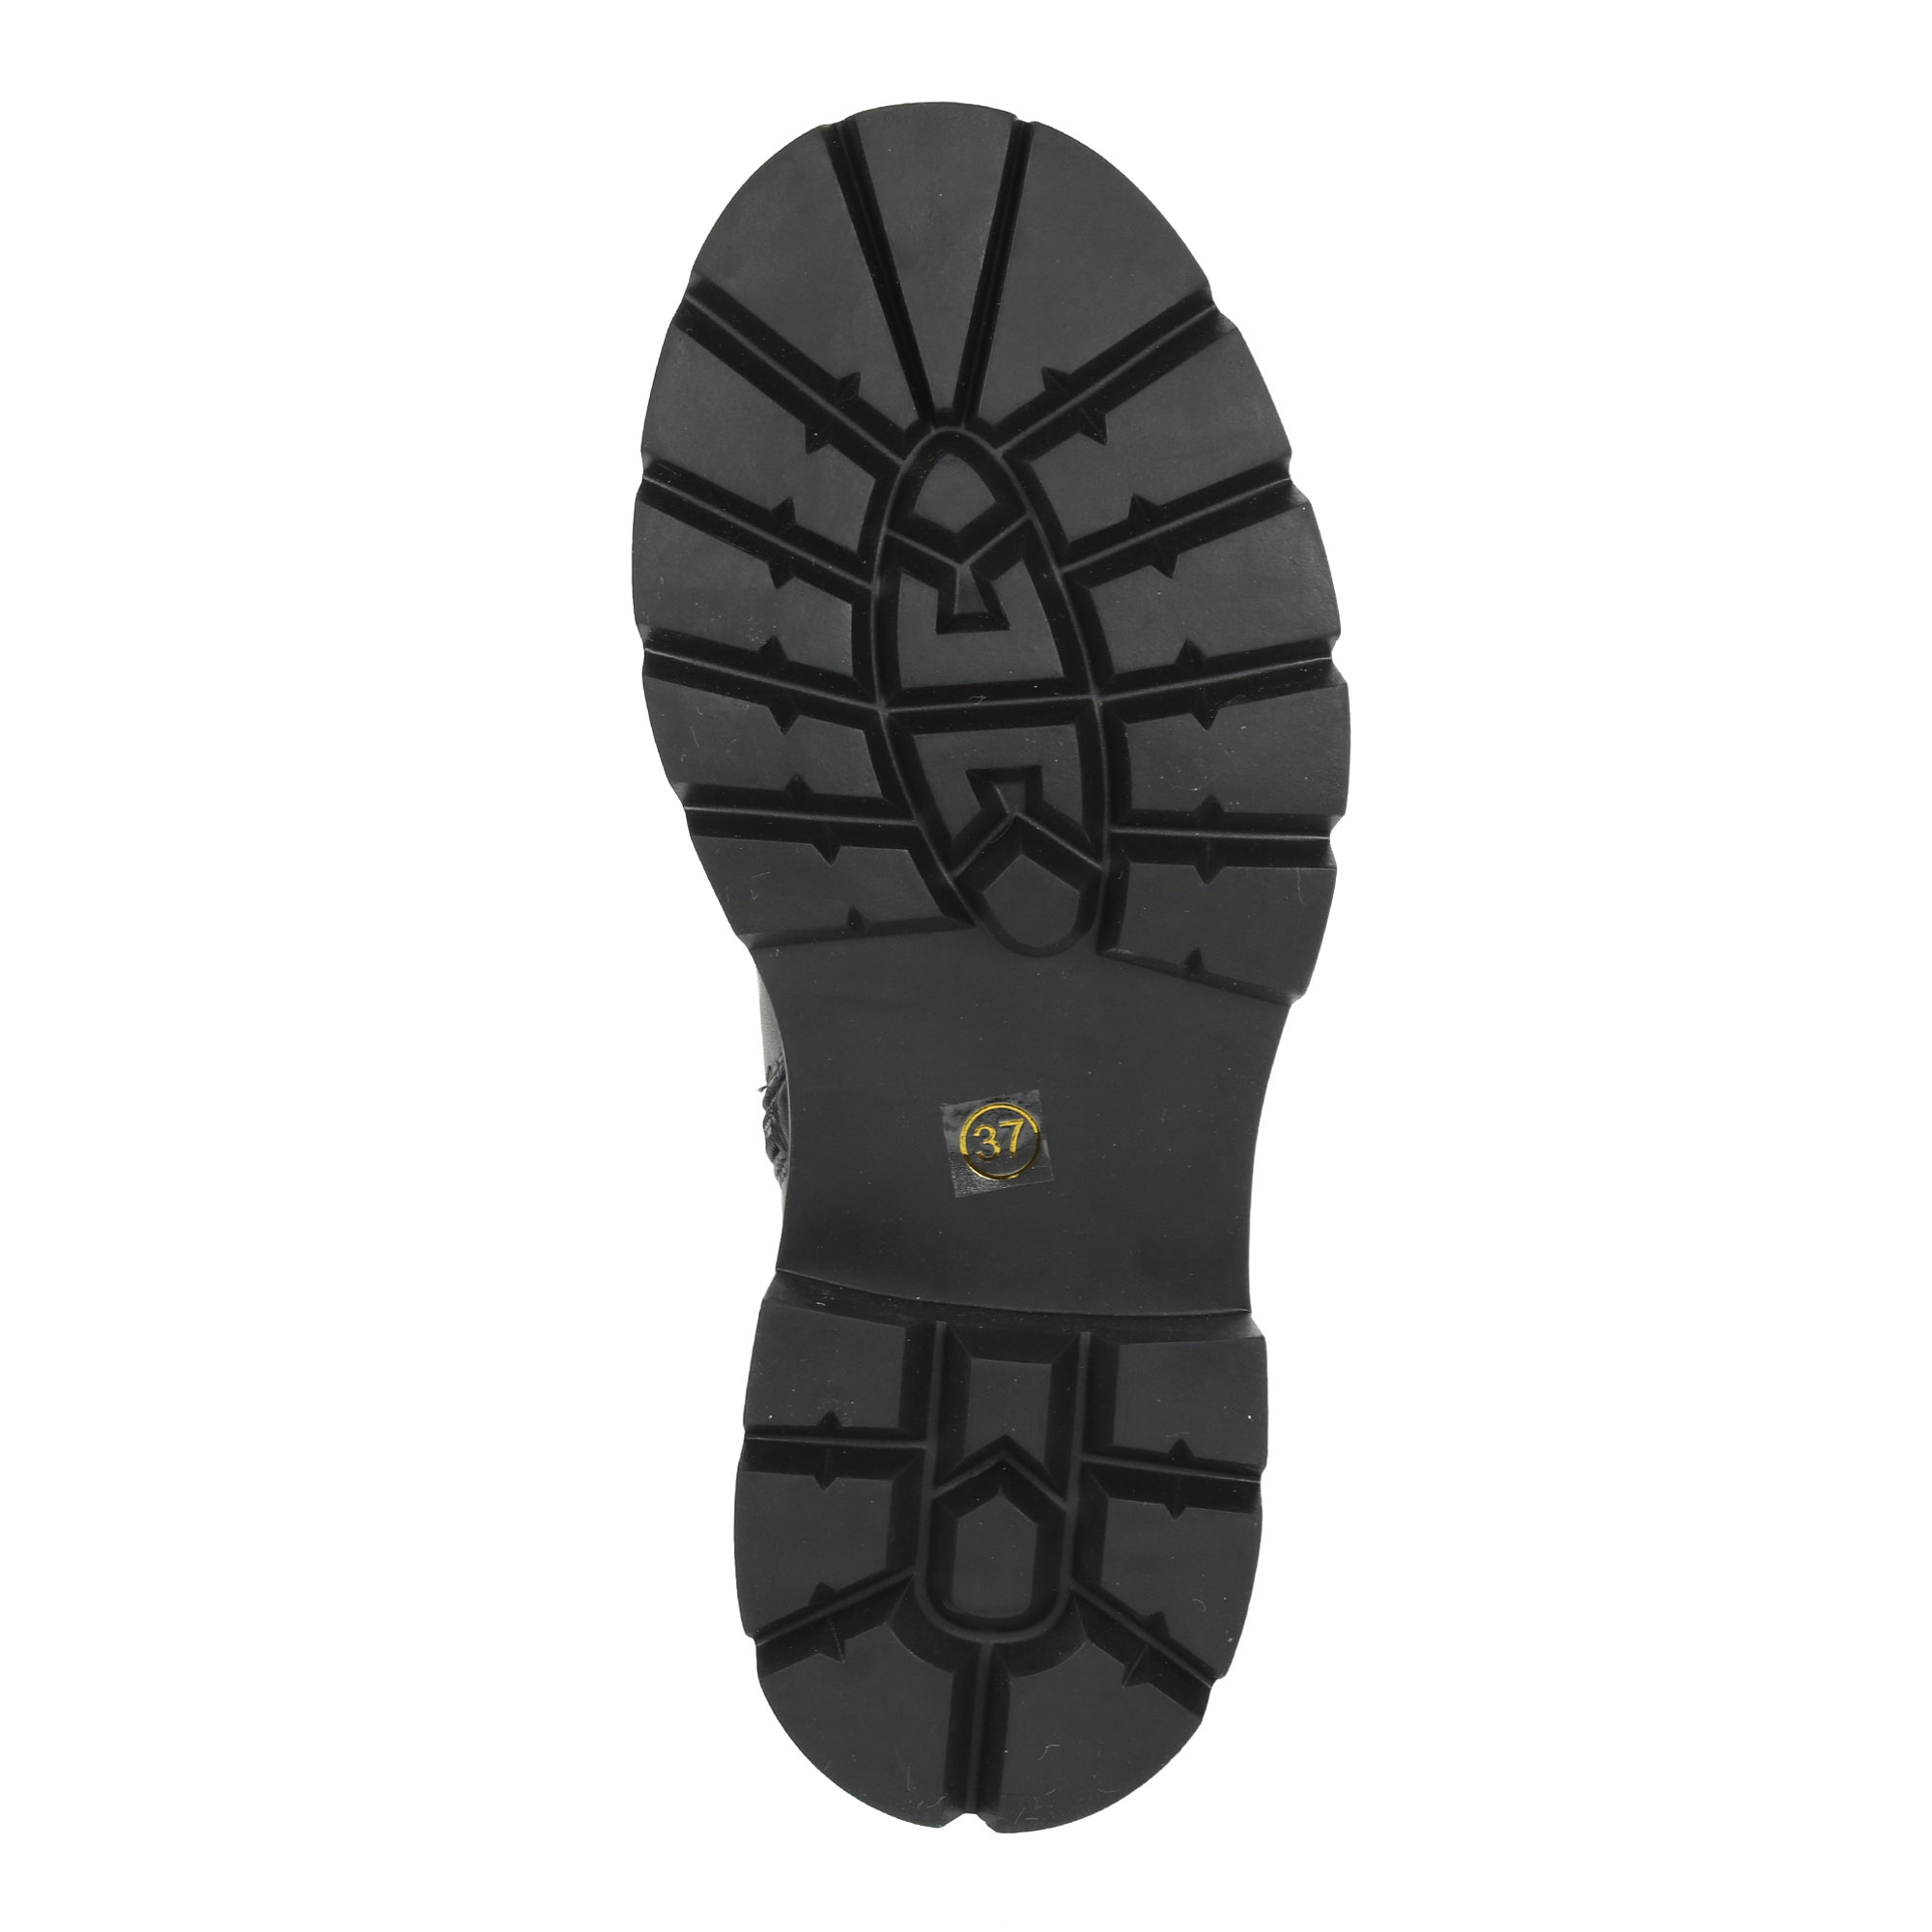 Черные ботинки из кожи на подкладке из натуральной шерсти на тракторной подошве Respect, размер 37, цвет черный - фото 8